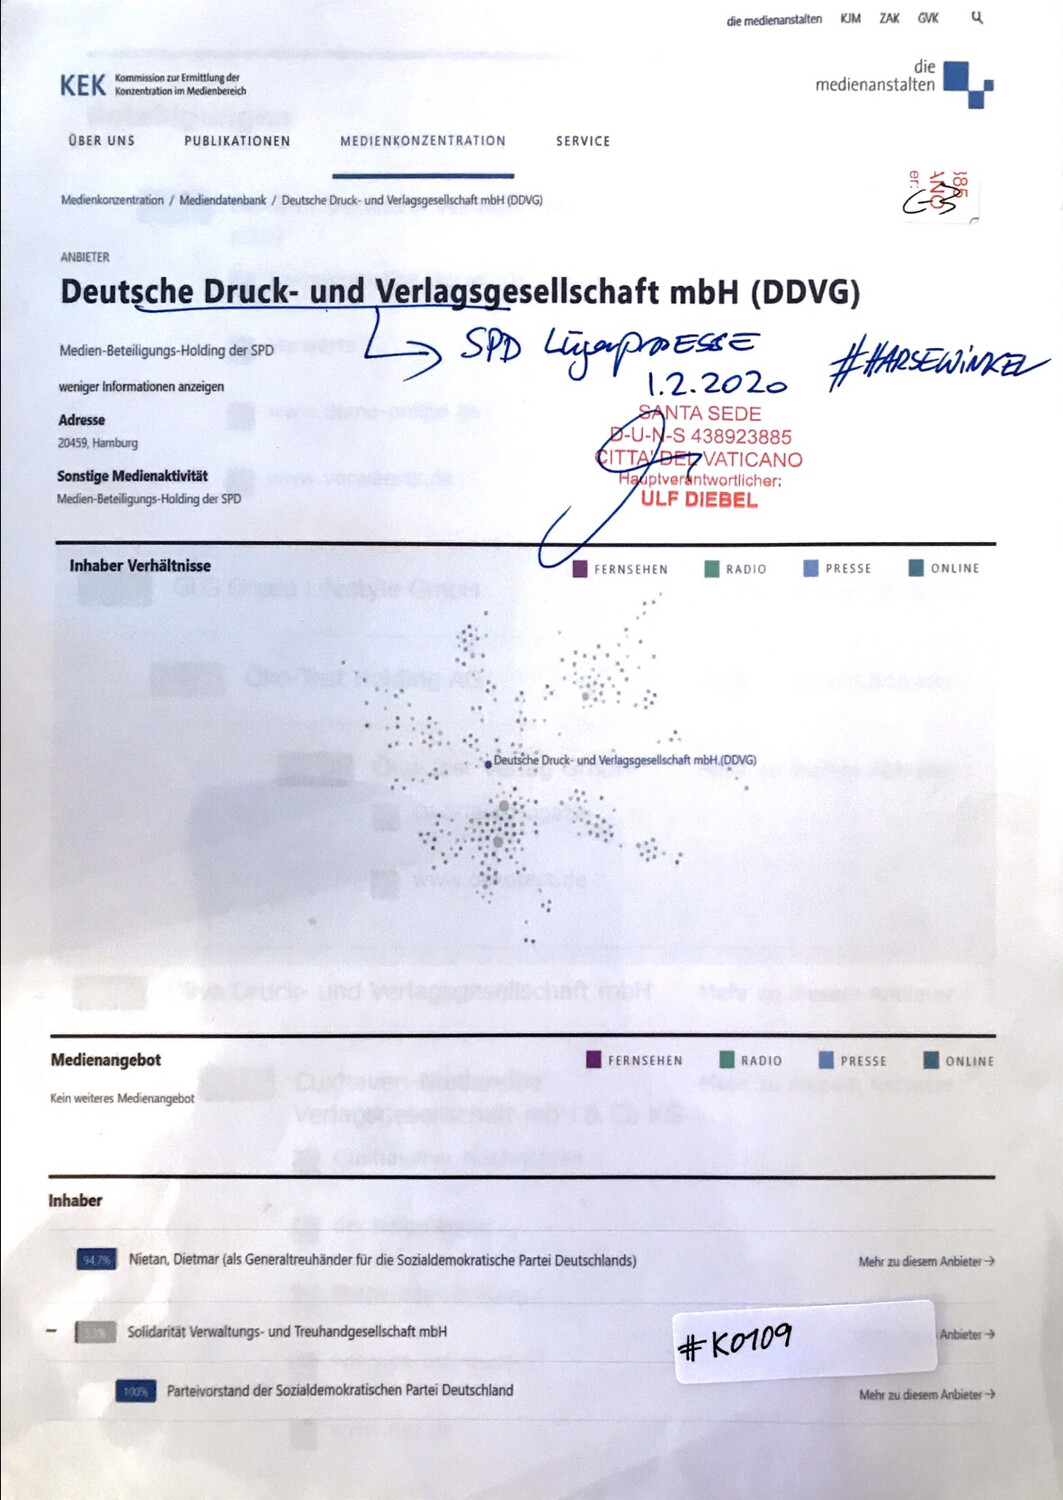 #K0109 l KEK - Deutsche Druck- und Verlagsgesellschaft mbH (DDVG) l SPD Lügenpresse